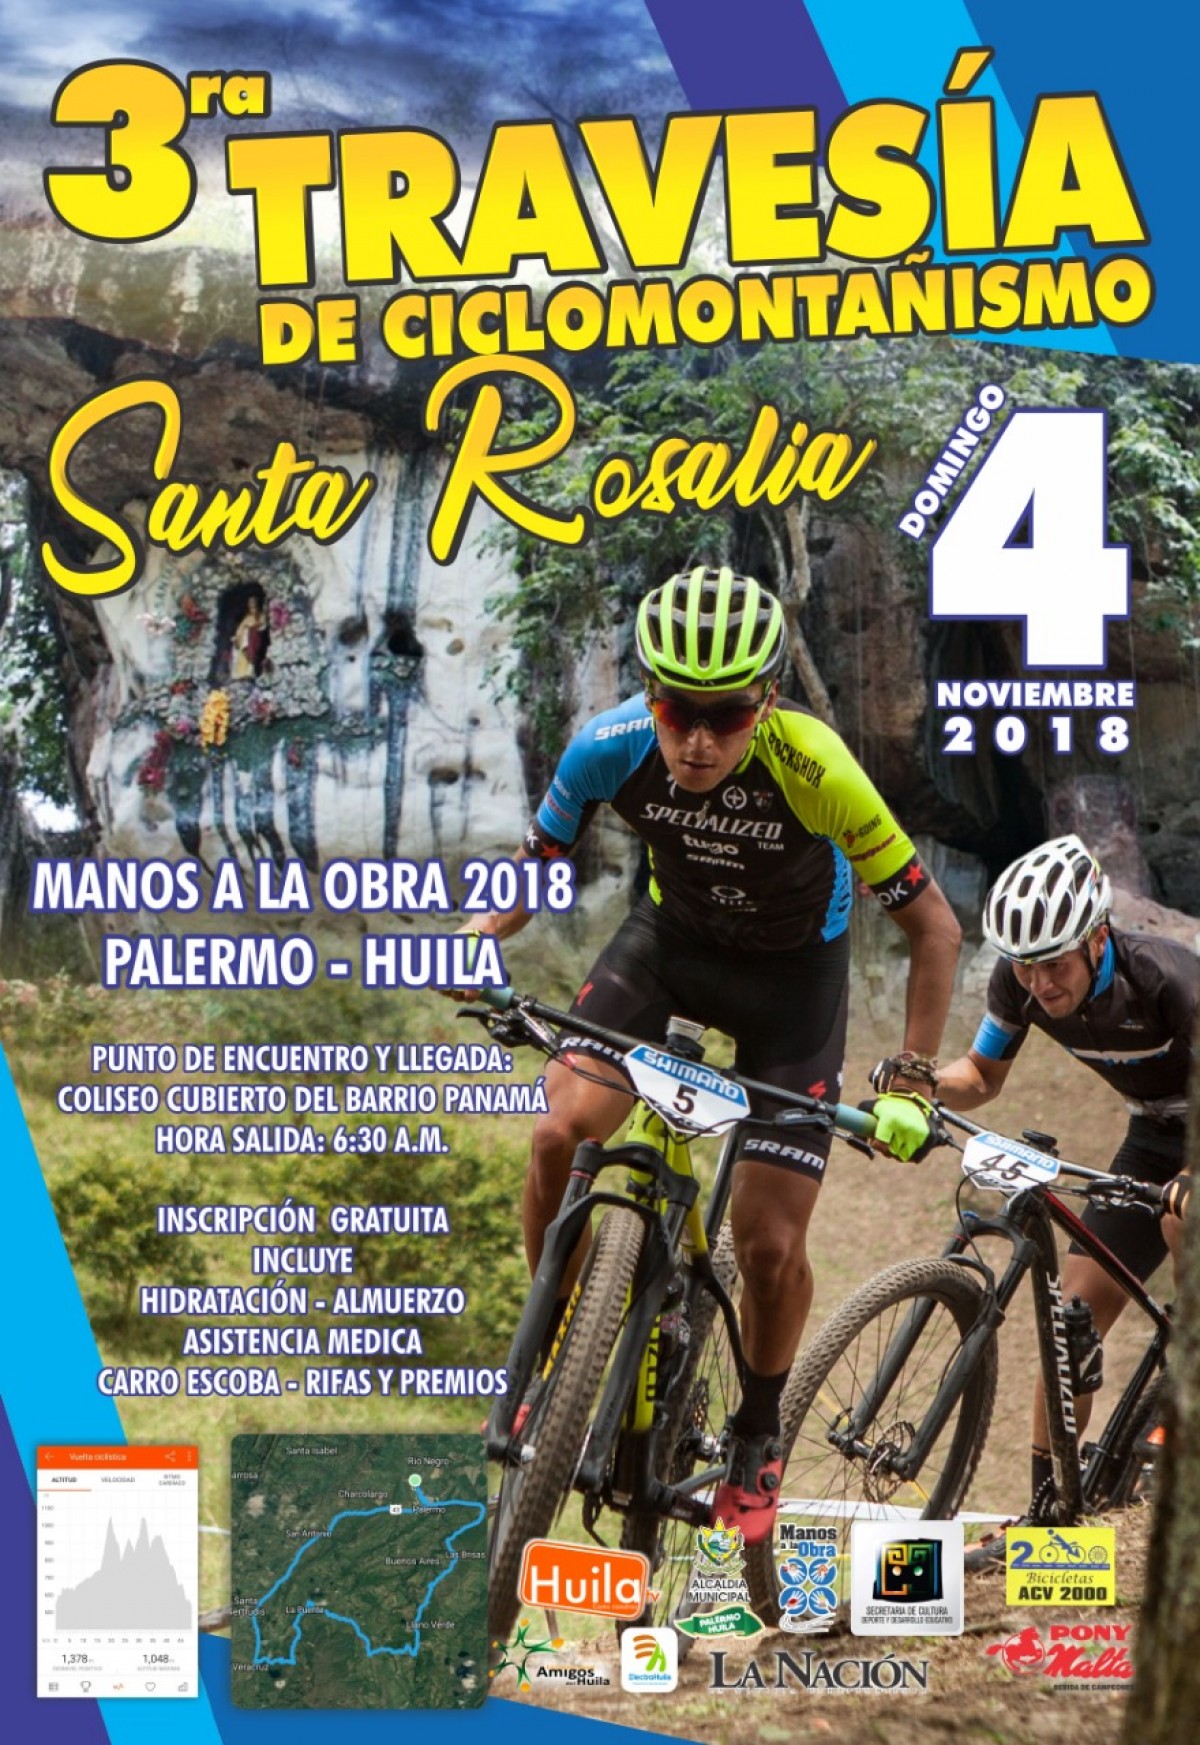 3ª Travesía de Ciclomontañismo Santa Rosalía  Palermo - Huila 